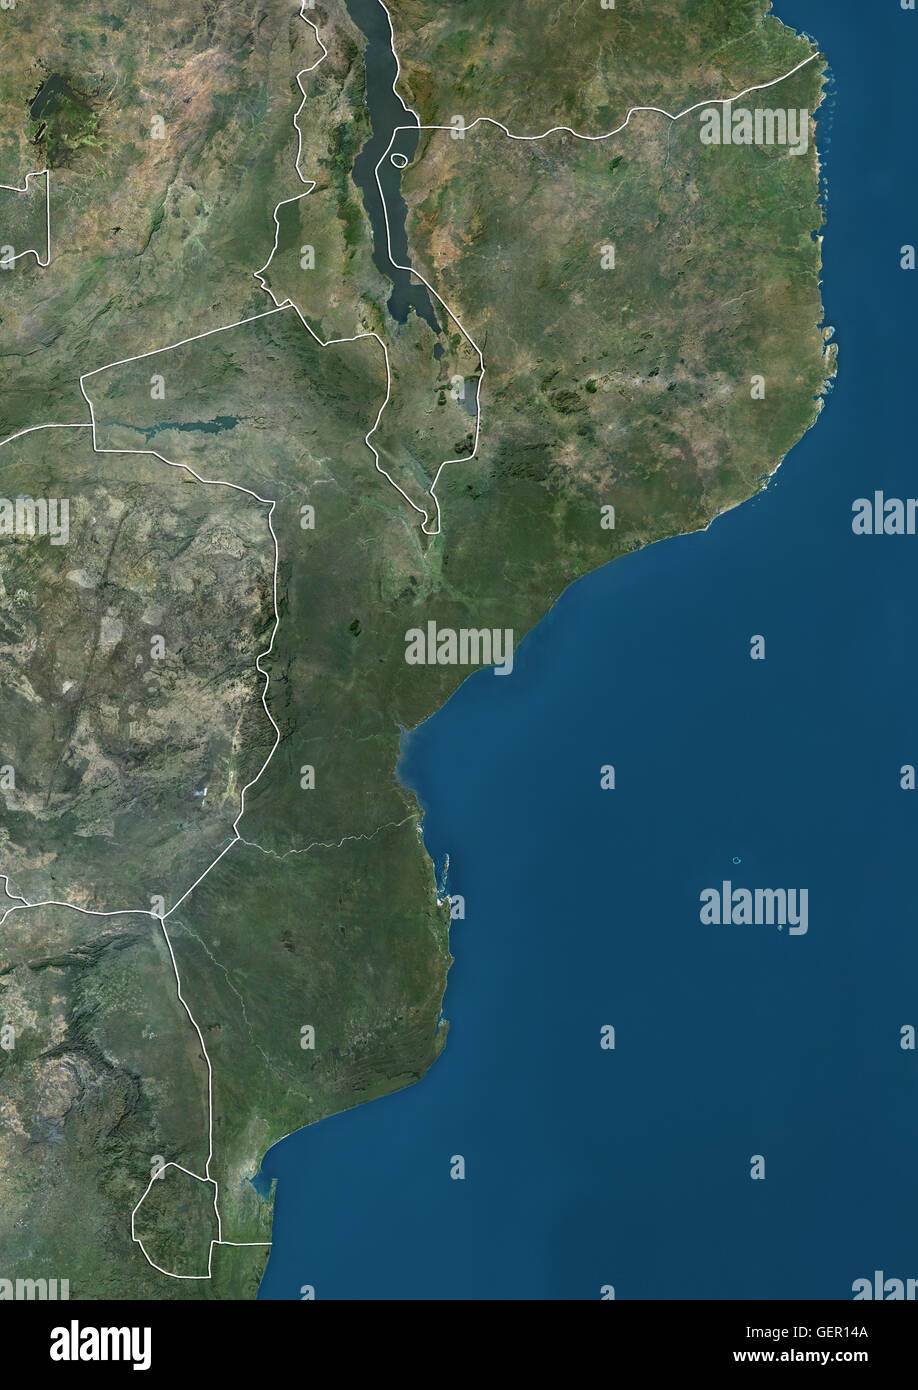 Satellitenansicht von Mosambik (mit Ländergrenzen). Dieses Bild wurde aus Daten von Landsat-Satelliten erworben erstellt. Stockfoto